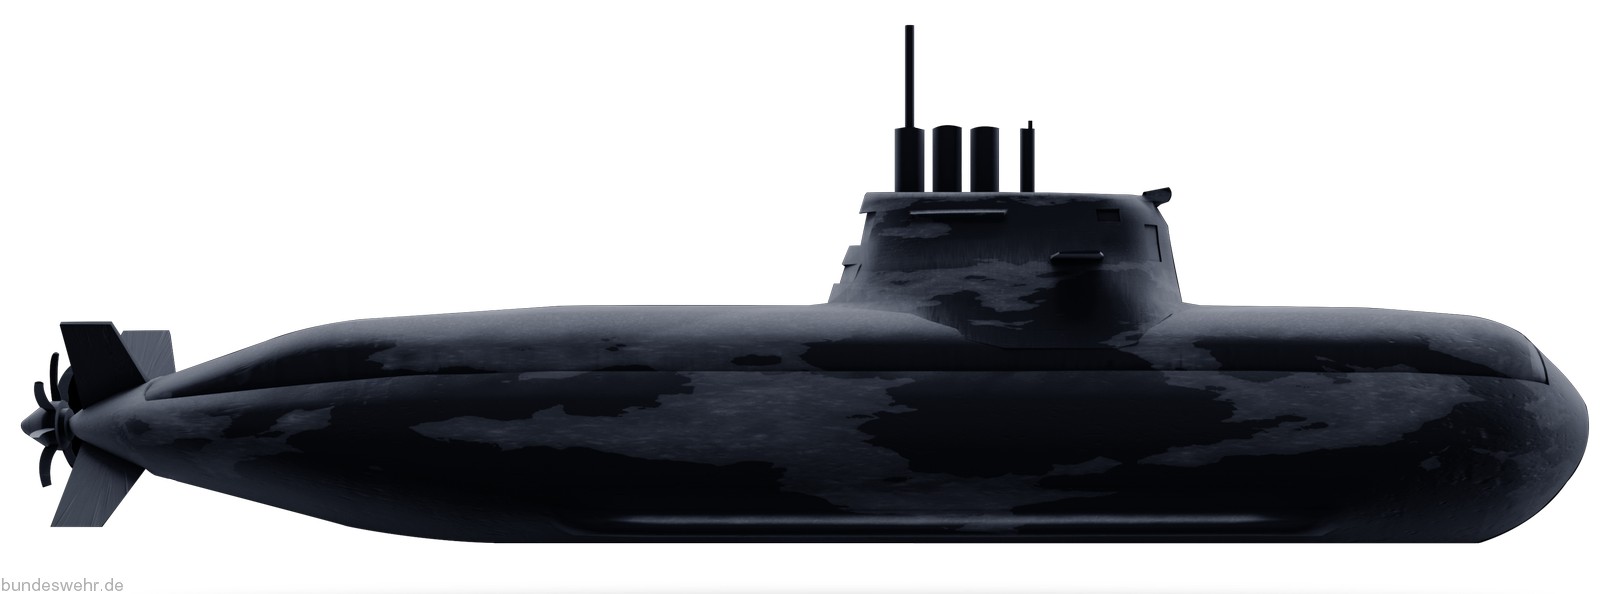 type 212a class submarine german navy deutsche marine hdw kiel torpedo 04